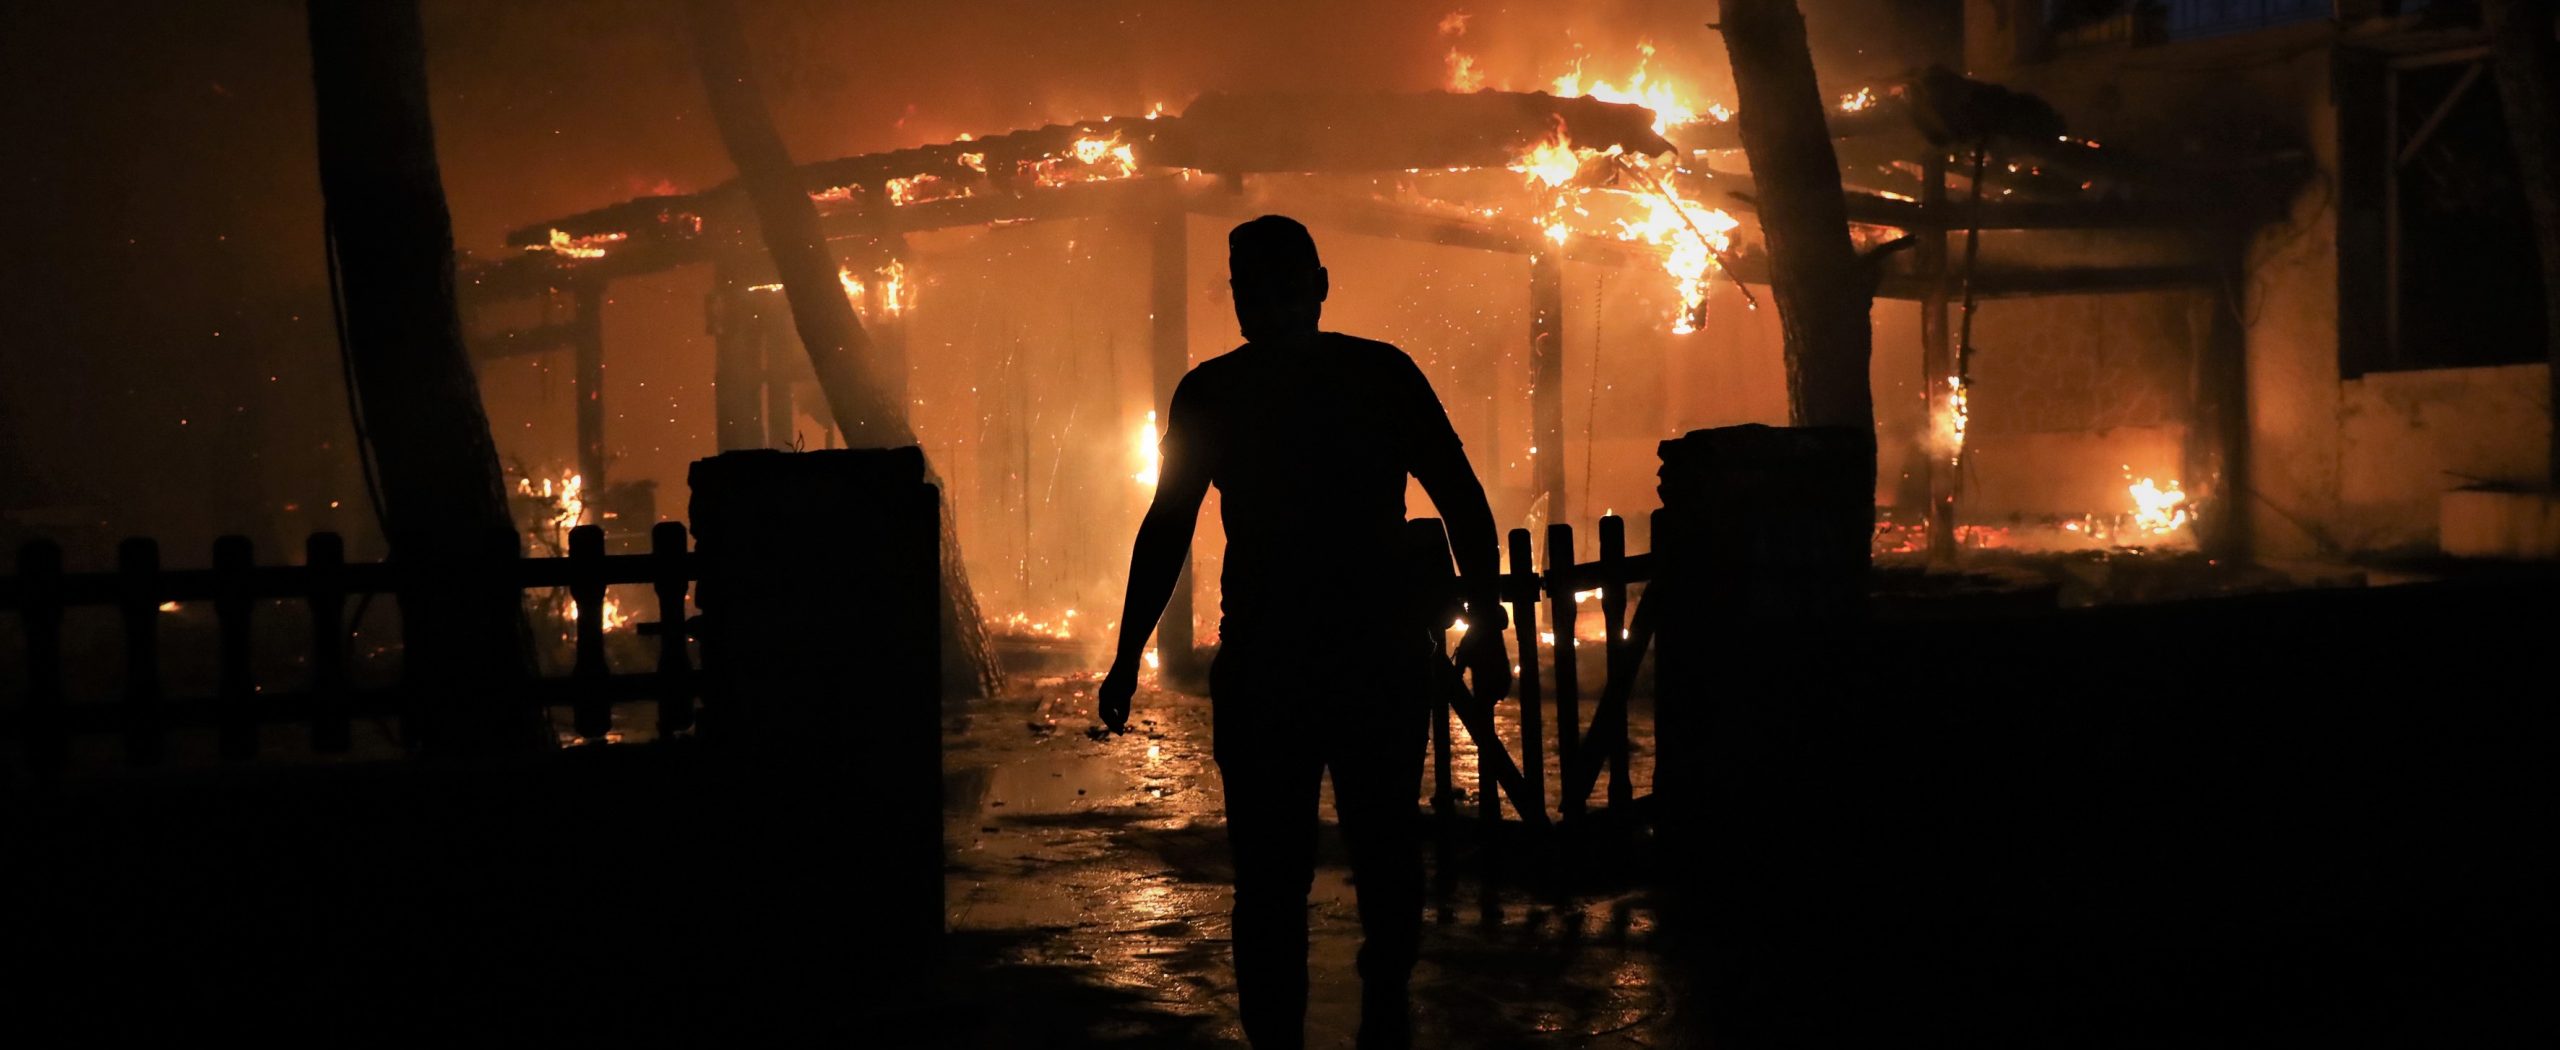 Εκκενώνεται από τον πληθυσμό του το Κρυονέρι με κυβερνητική εντολή  – Αδυνατούν να συγκρατήσουν την φωτιά (βίντεο)